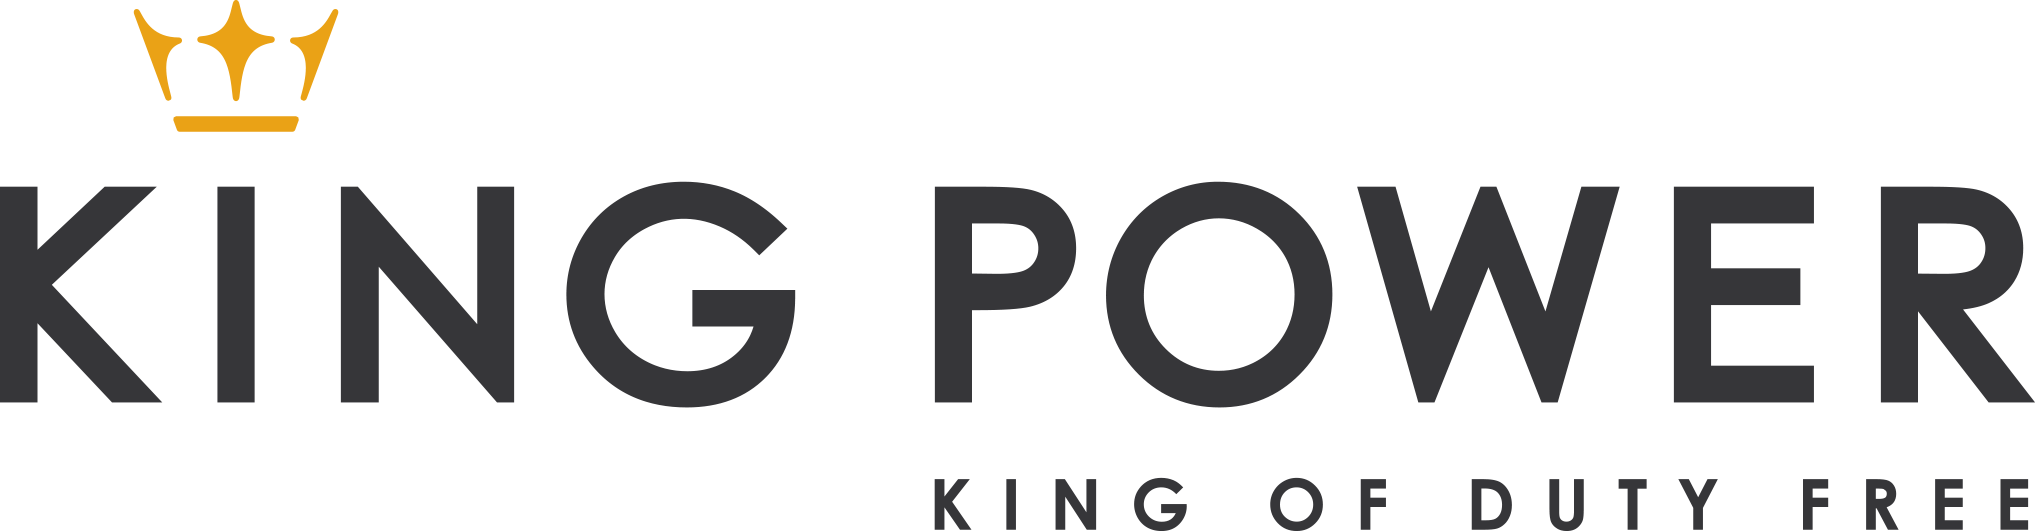 Кинг повер. Спонсор King Power. Кинг логотип. Логотип the Power Architecture. King Power International Group.